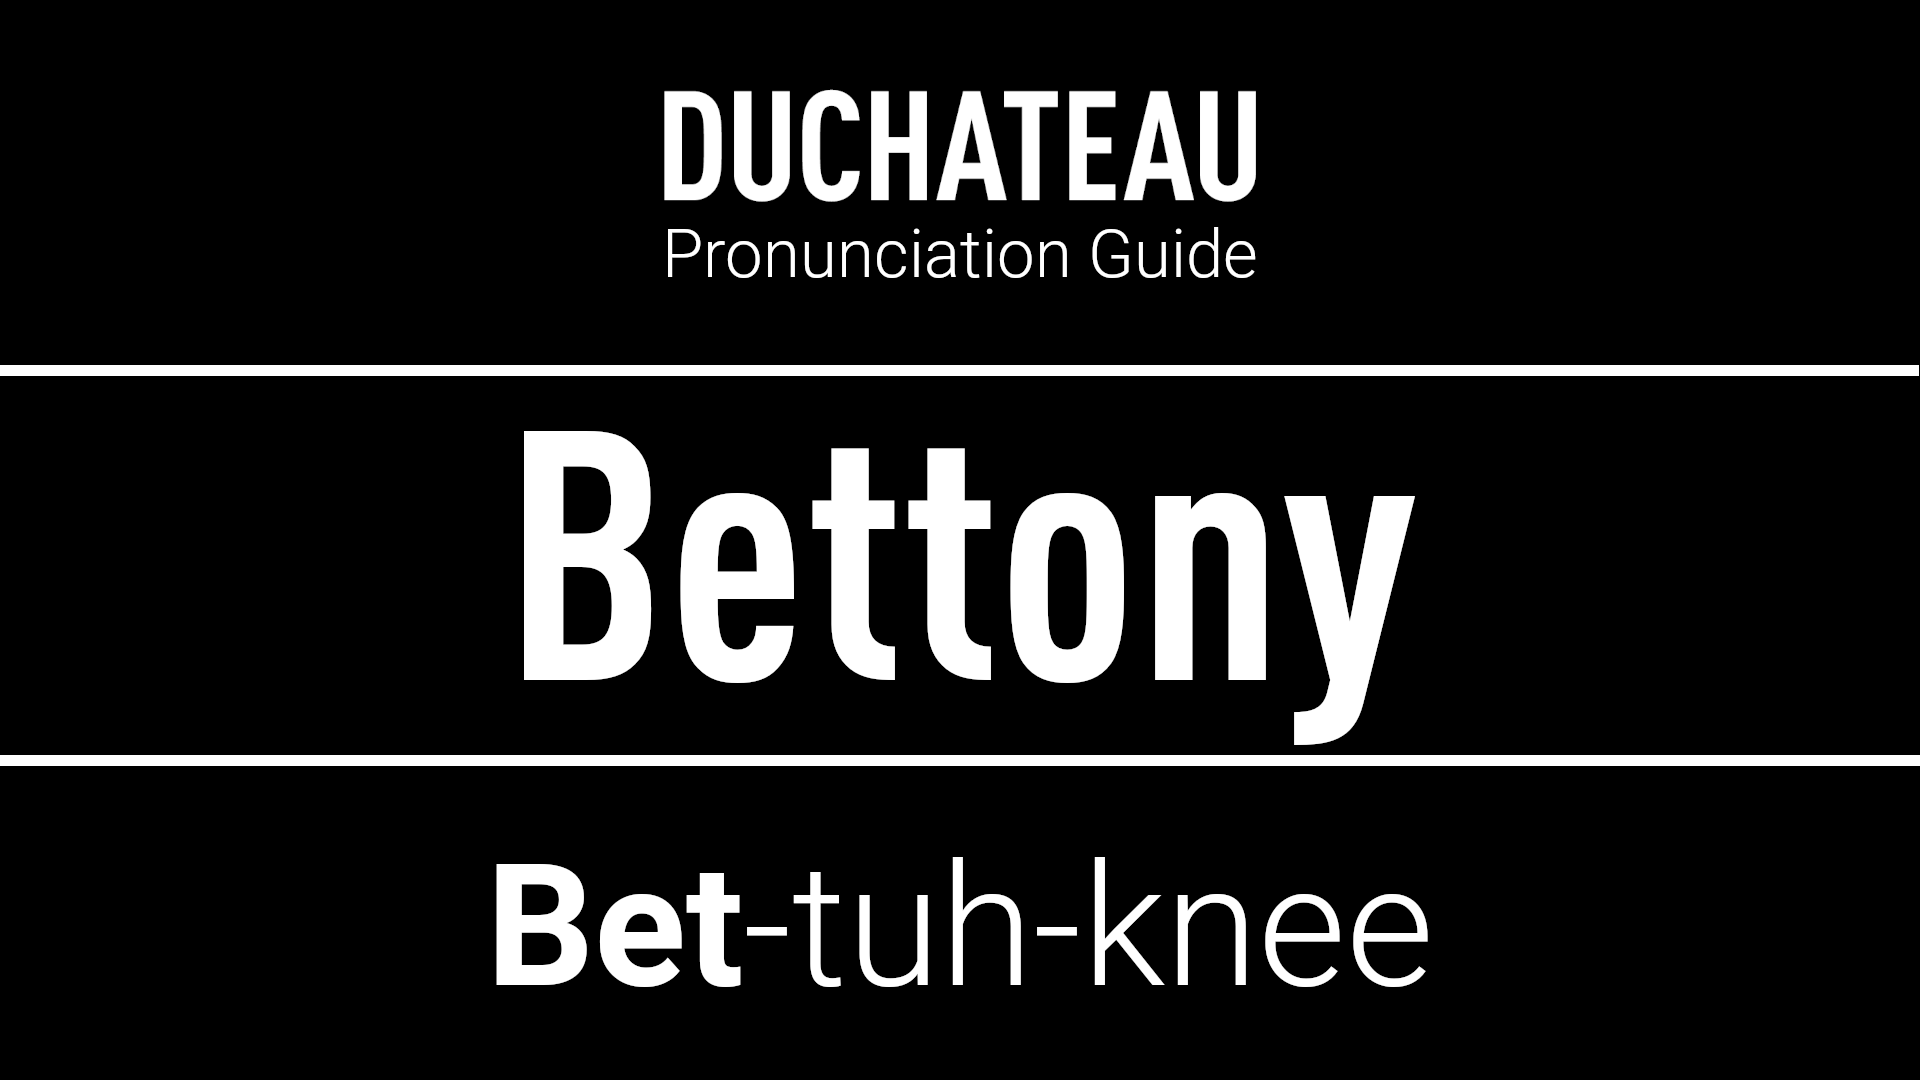 Bettony Pronunciation